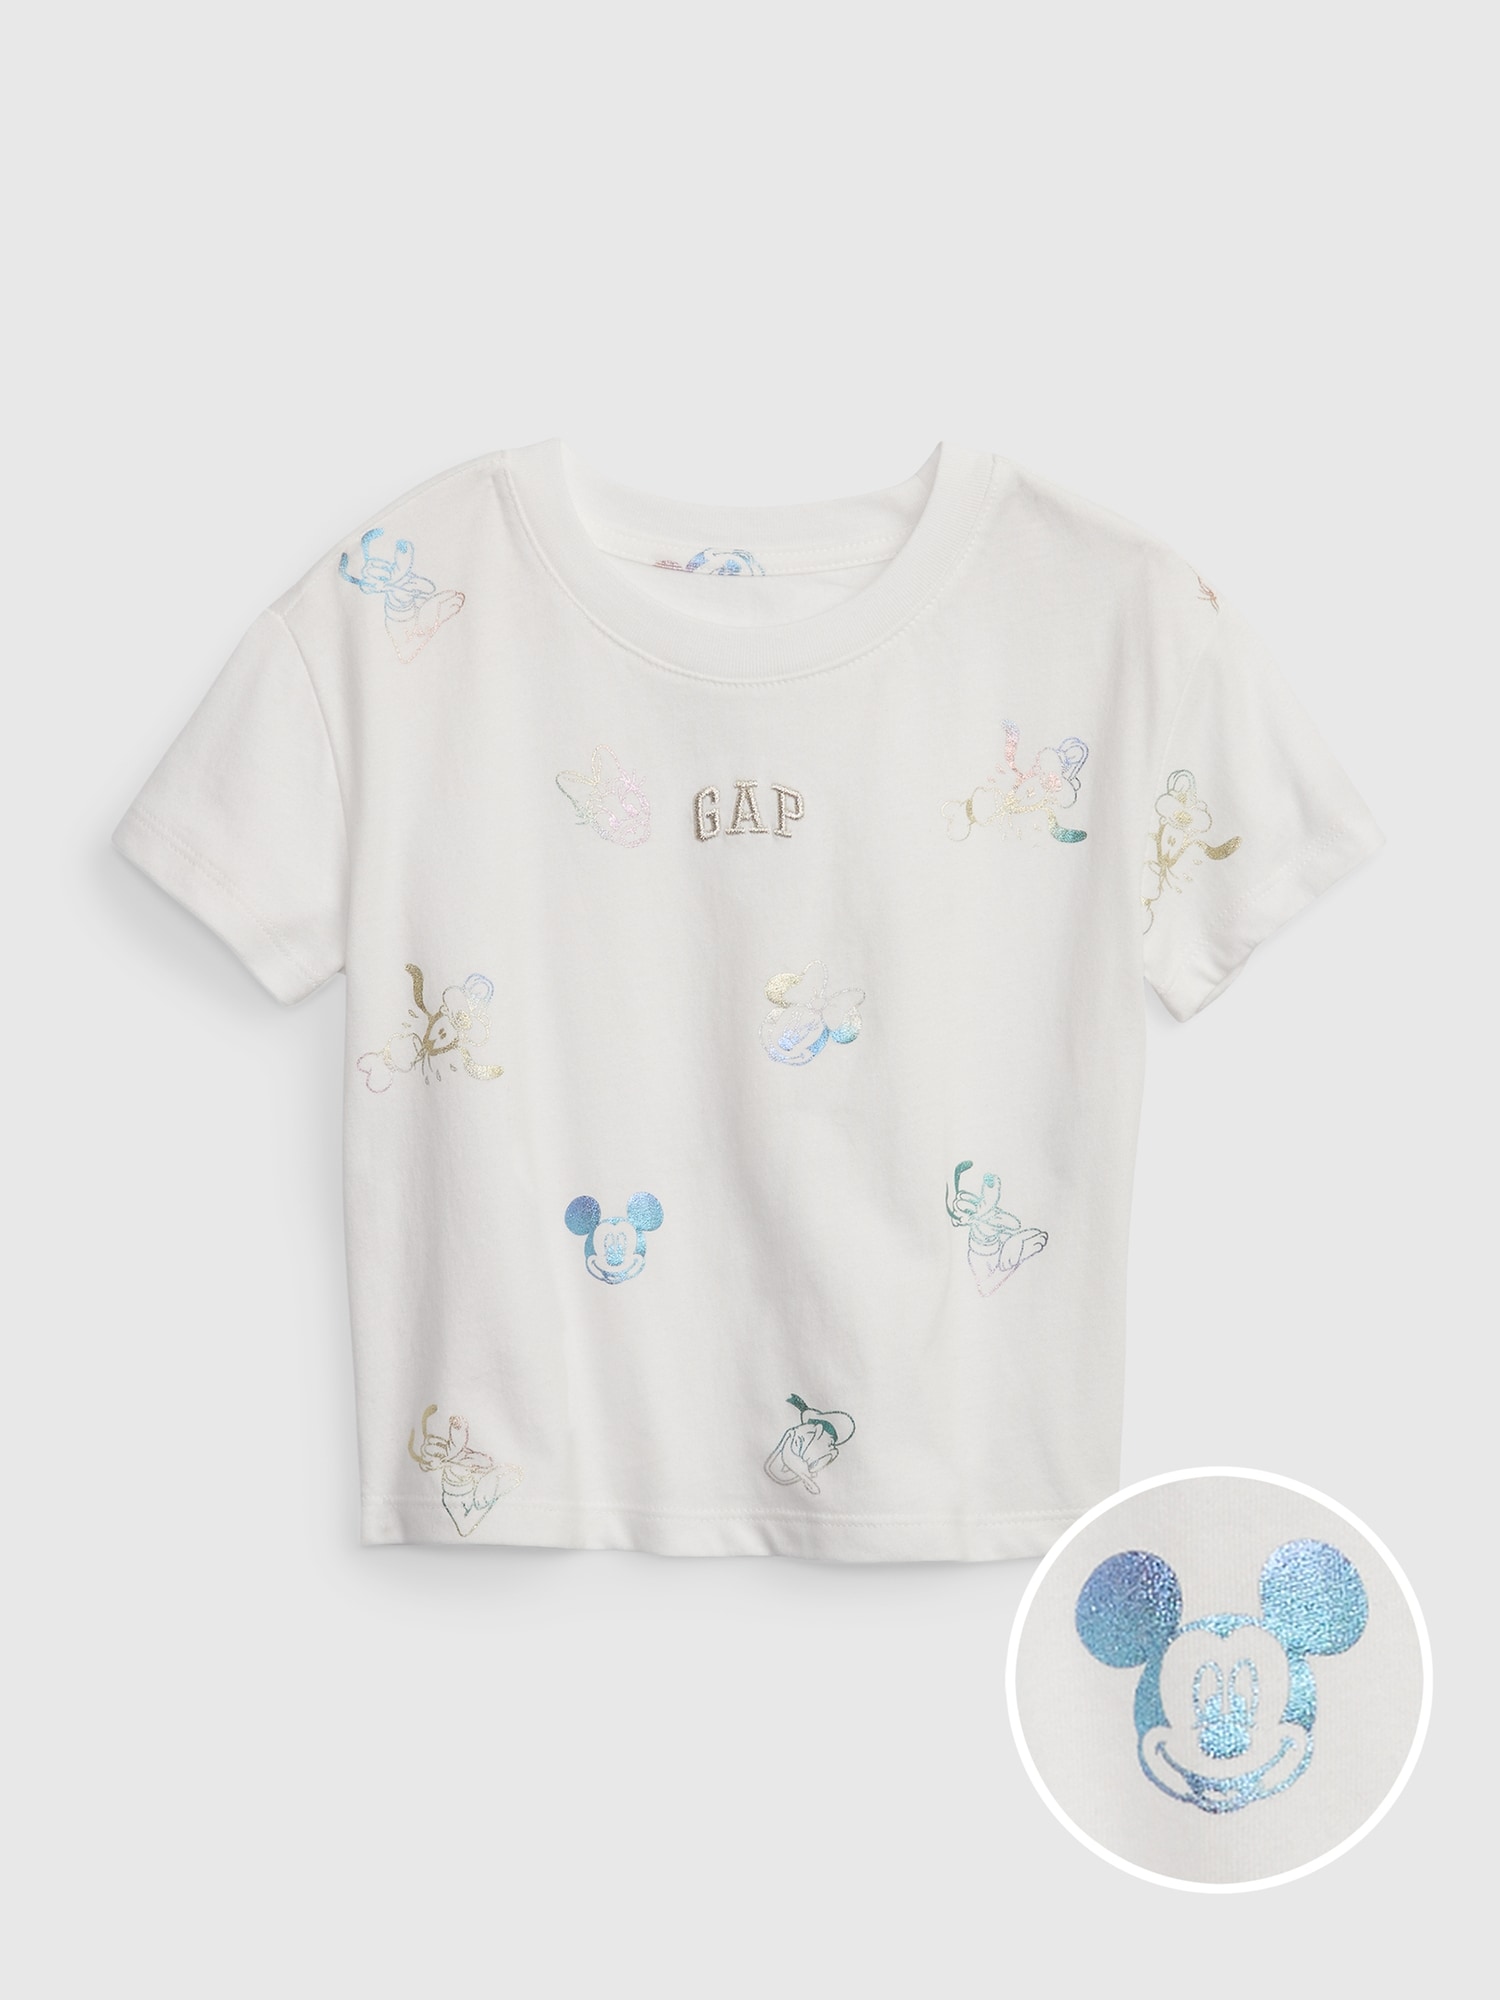 売り最激安 baby gap×disney ミッキー Tシャツ 2T 買蔵 杉田:234円 ブランド:ベビーギャップ トップス、